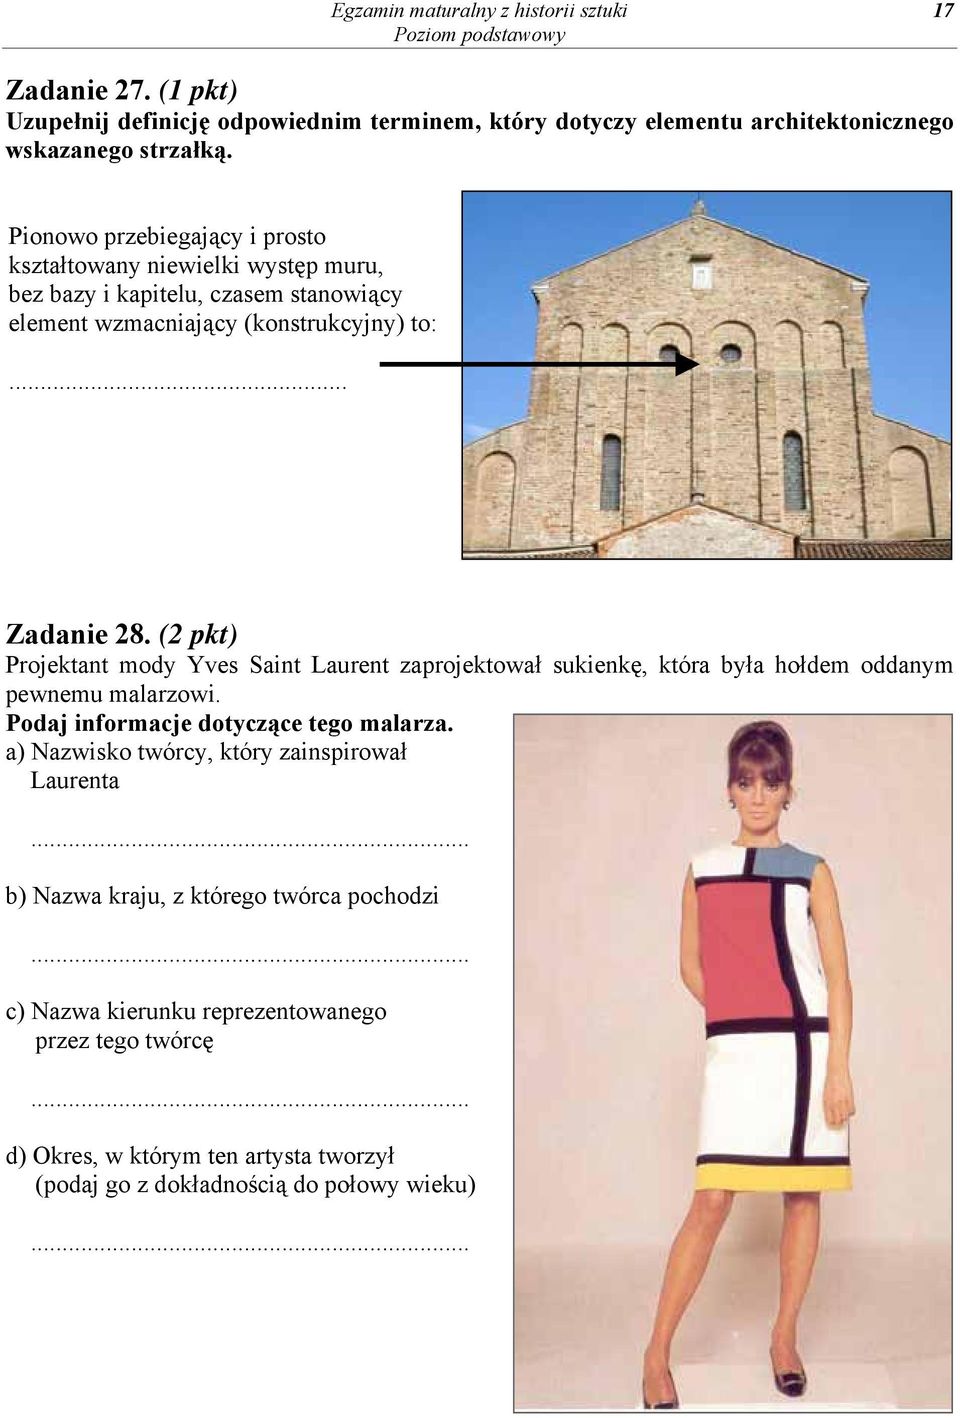 (2 pkt) Projektant mody Yves Saint Laurent zaprojektował sukienkę, która była hołdem oddanym pewnemu malarzowi. Podaj informacje dotyczące tego malarza.